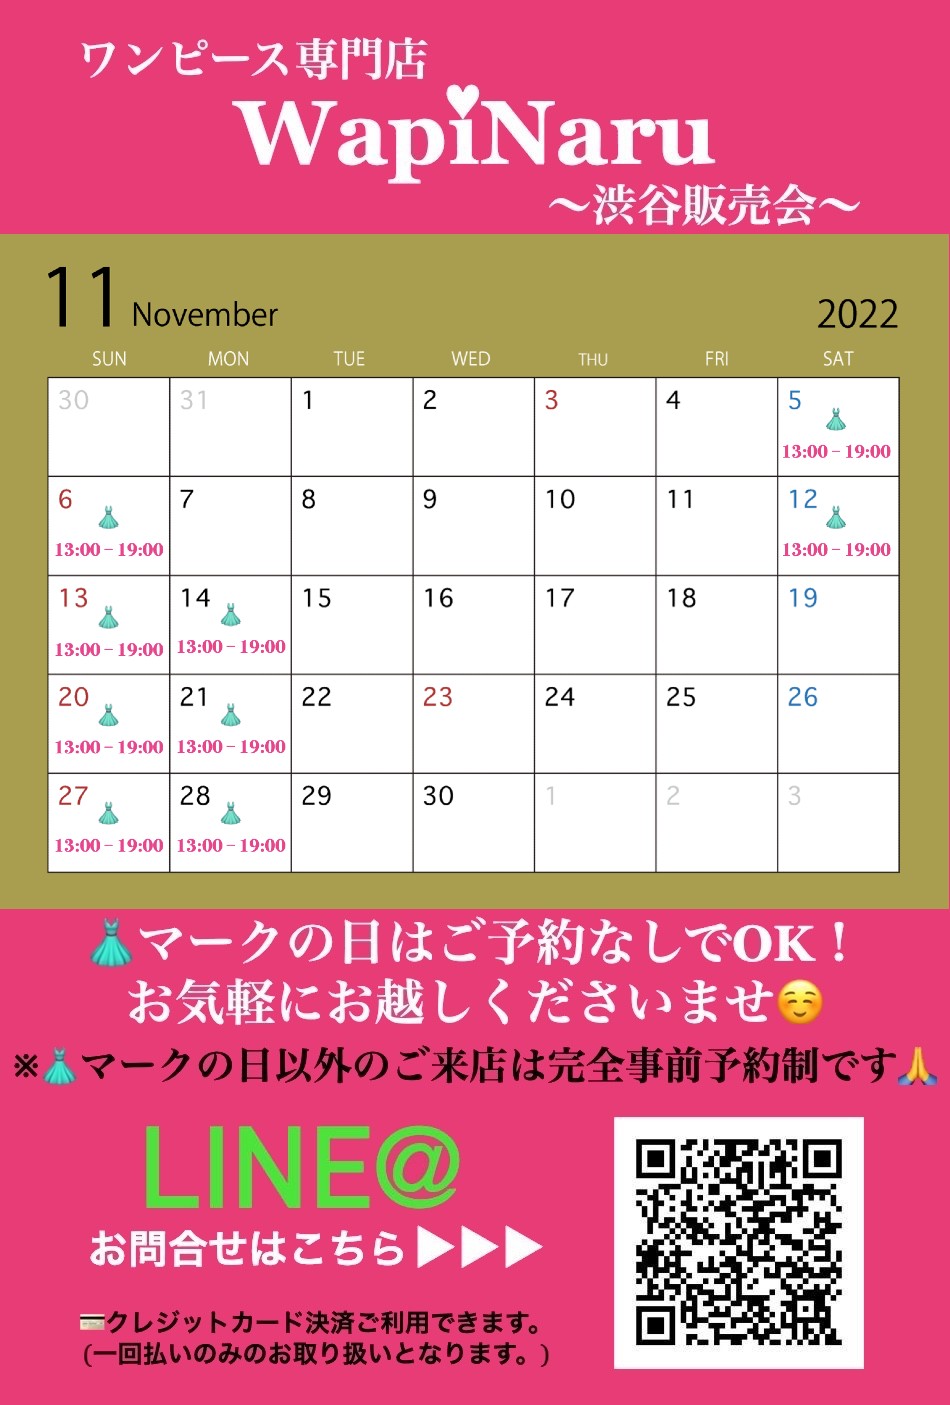 2022年11月 渋谷販売会